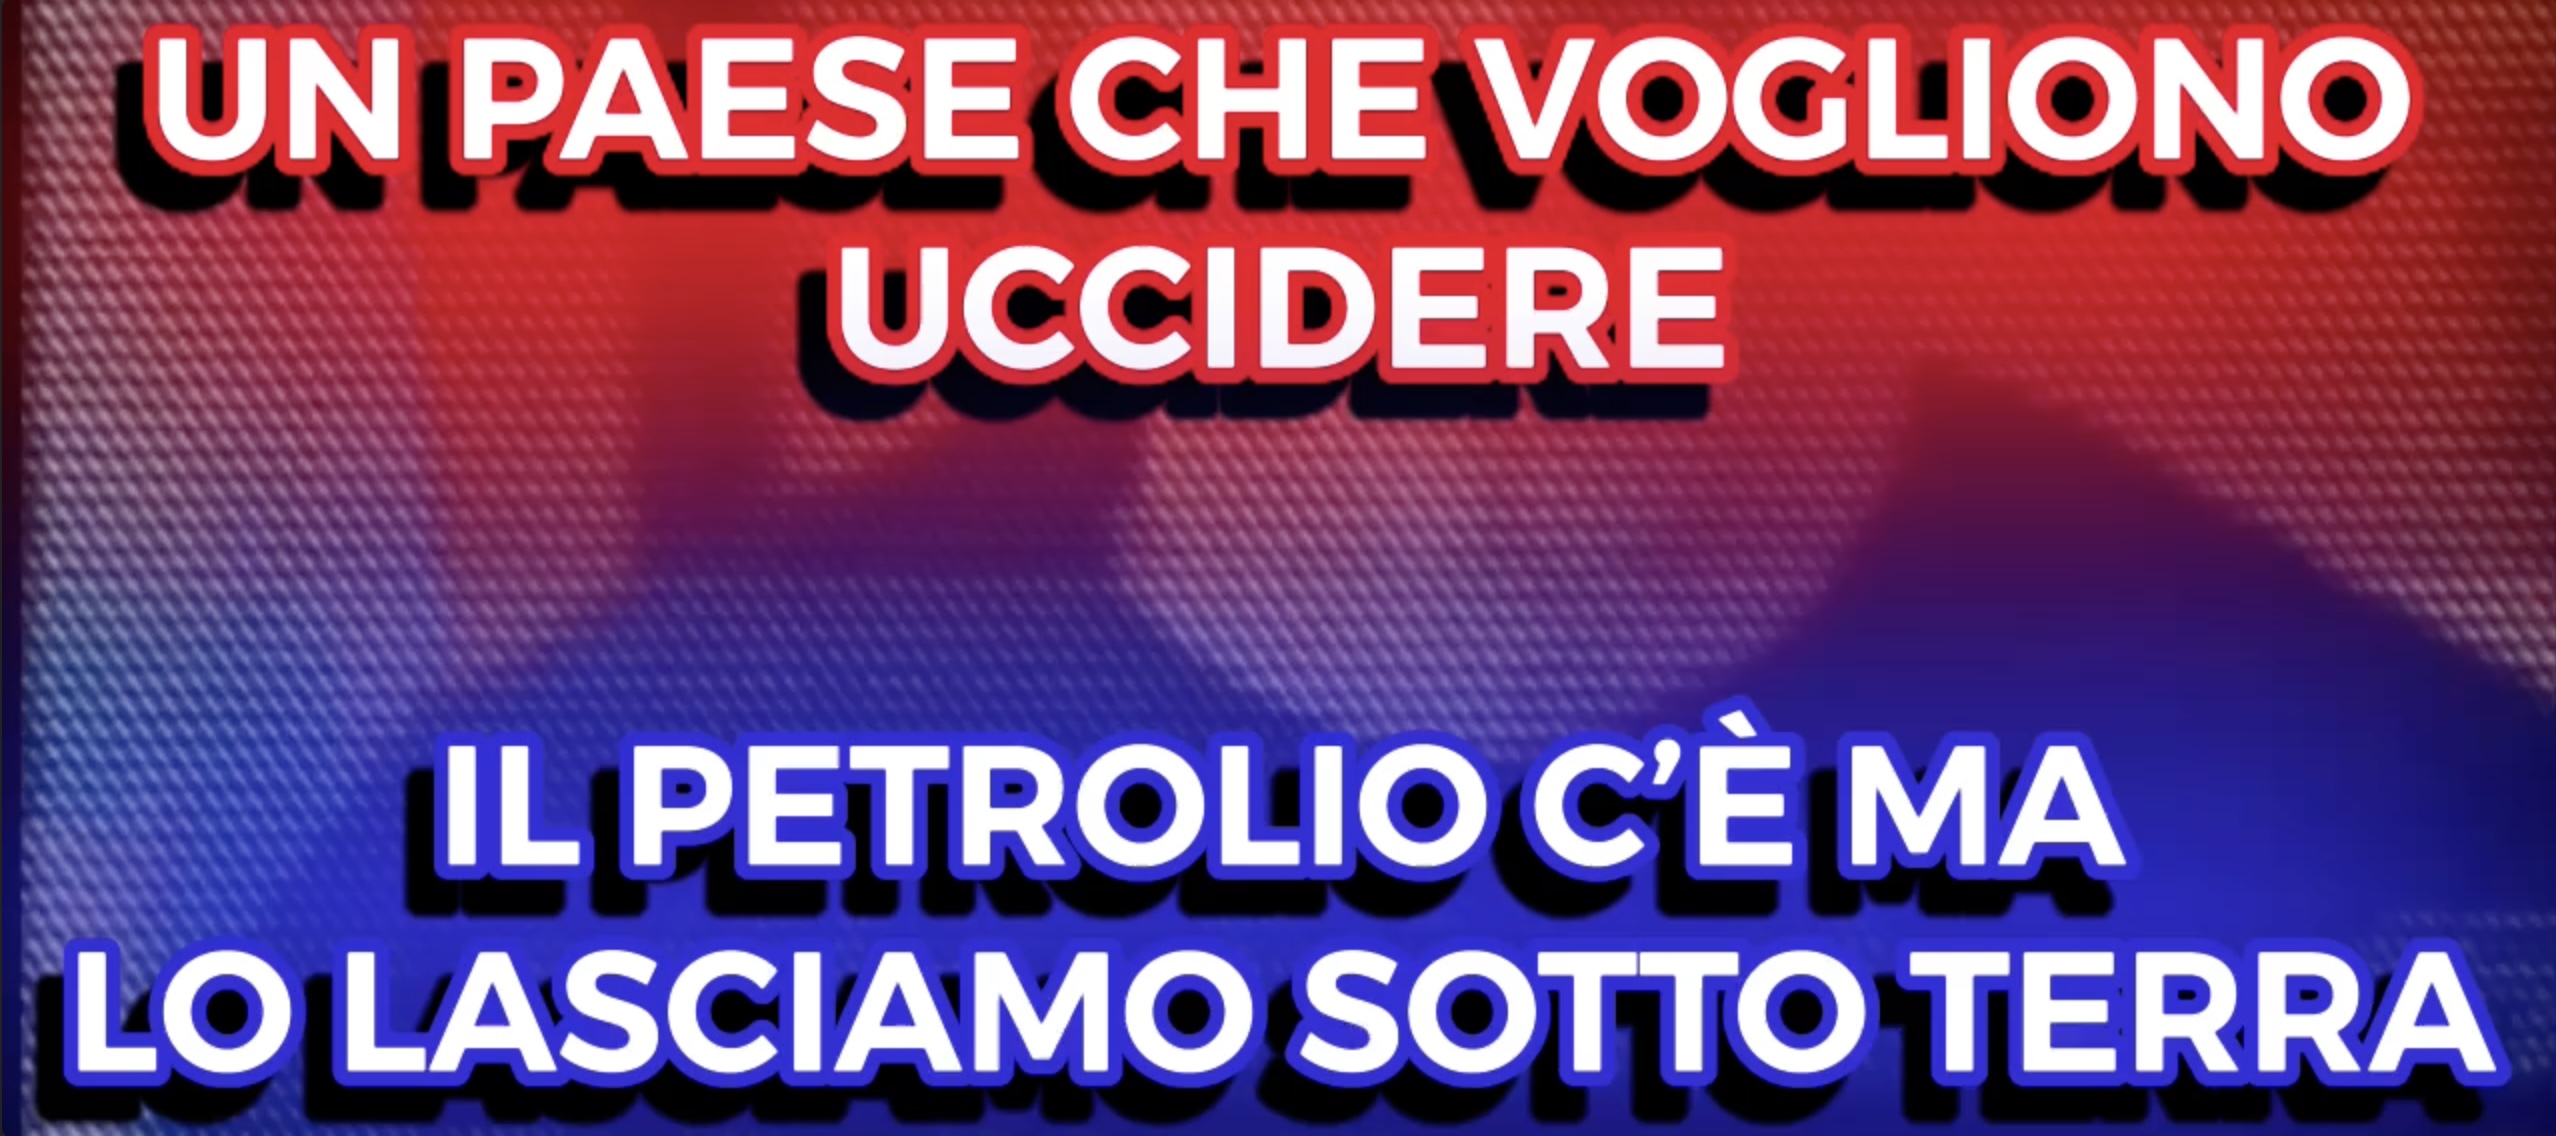 LItalia un Paese che vogliono Uccidere - Il Petrolio cè ma lo Lasciano Sotto Terra